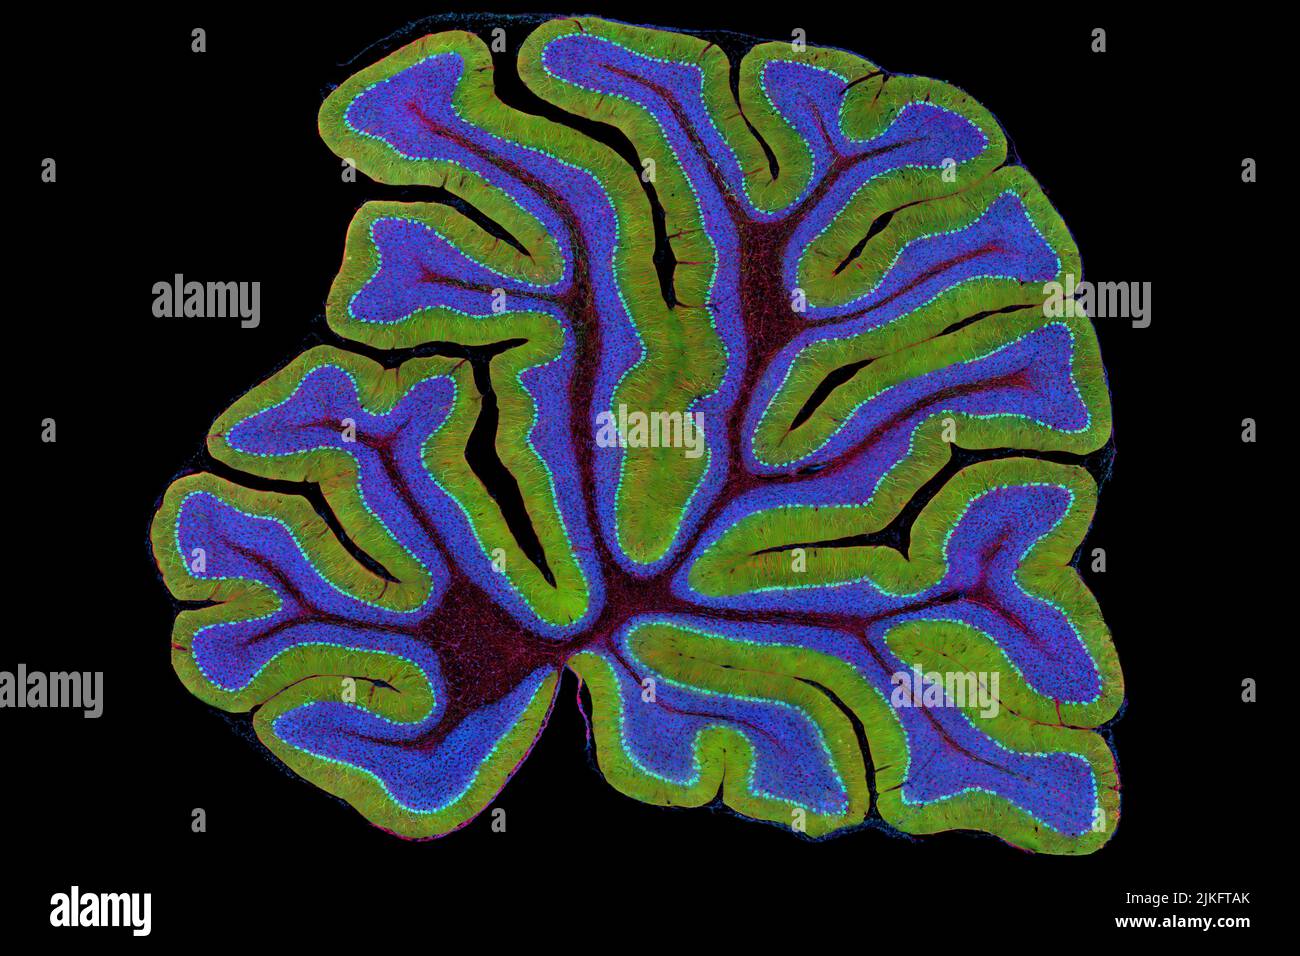 Das Zerebellum einer Maus ist hier im Querschnitt dargestellt. Das Zerebellum ist das Kontrollzentrum der Fortbewegung des Gehirns. Jedes Mal, wenn du einen Basketball schießt, deinen Schuh festbindest oder eine Zwiebel hackst, springt dein Zerebellum in Aktion. Das an der Basis des Gehirns gelegene Zerebellum ist eine einzige Gewebeschicht mit tiefen Falten wie ein Akkordeon. Menschen mit Schäden an diesem Hirnareal haben oft Schwierigkeiten mit Gleichgewicht, Koordination und Feinmotorik. Stockfoto